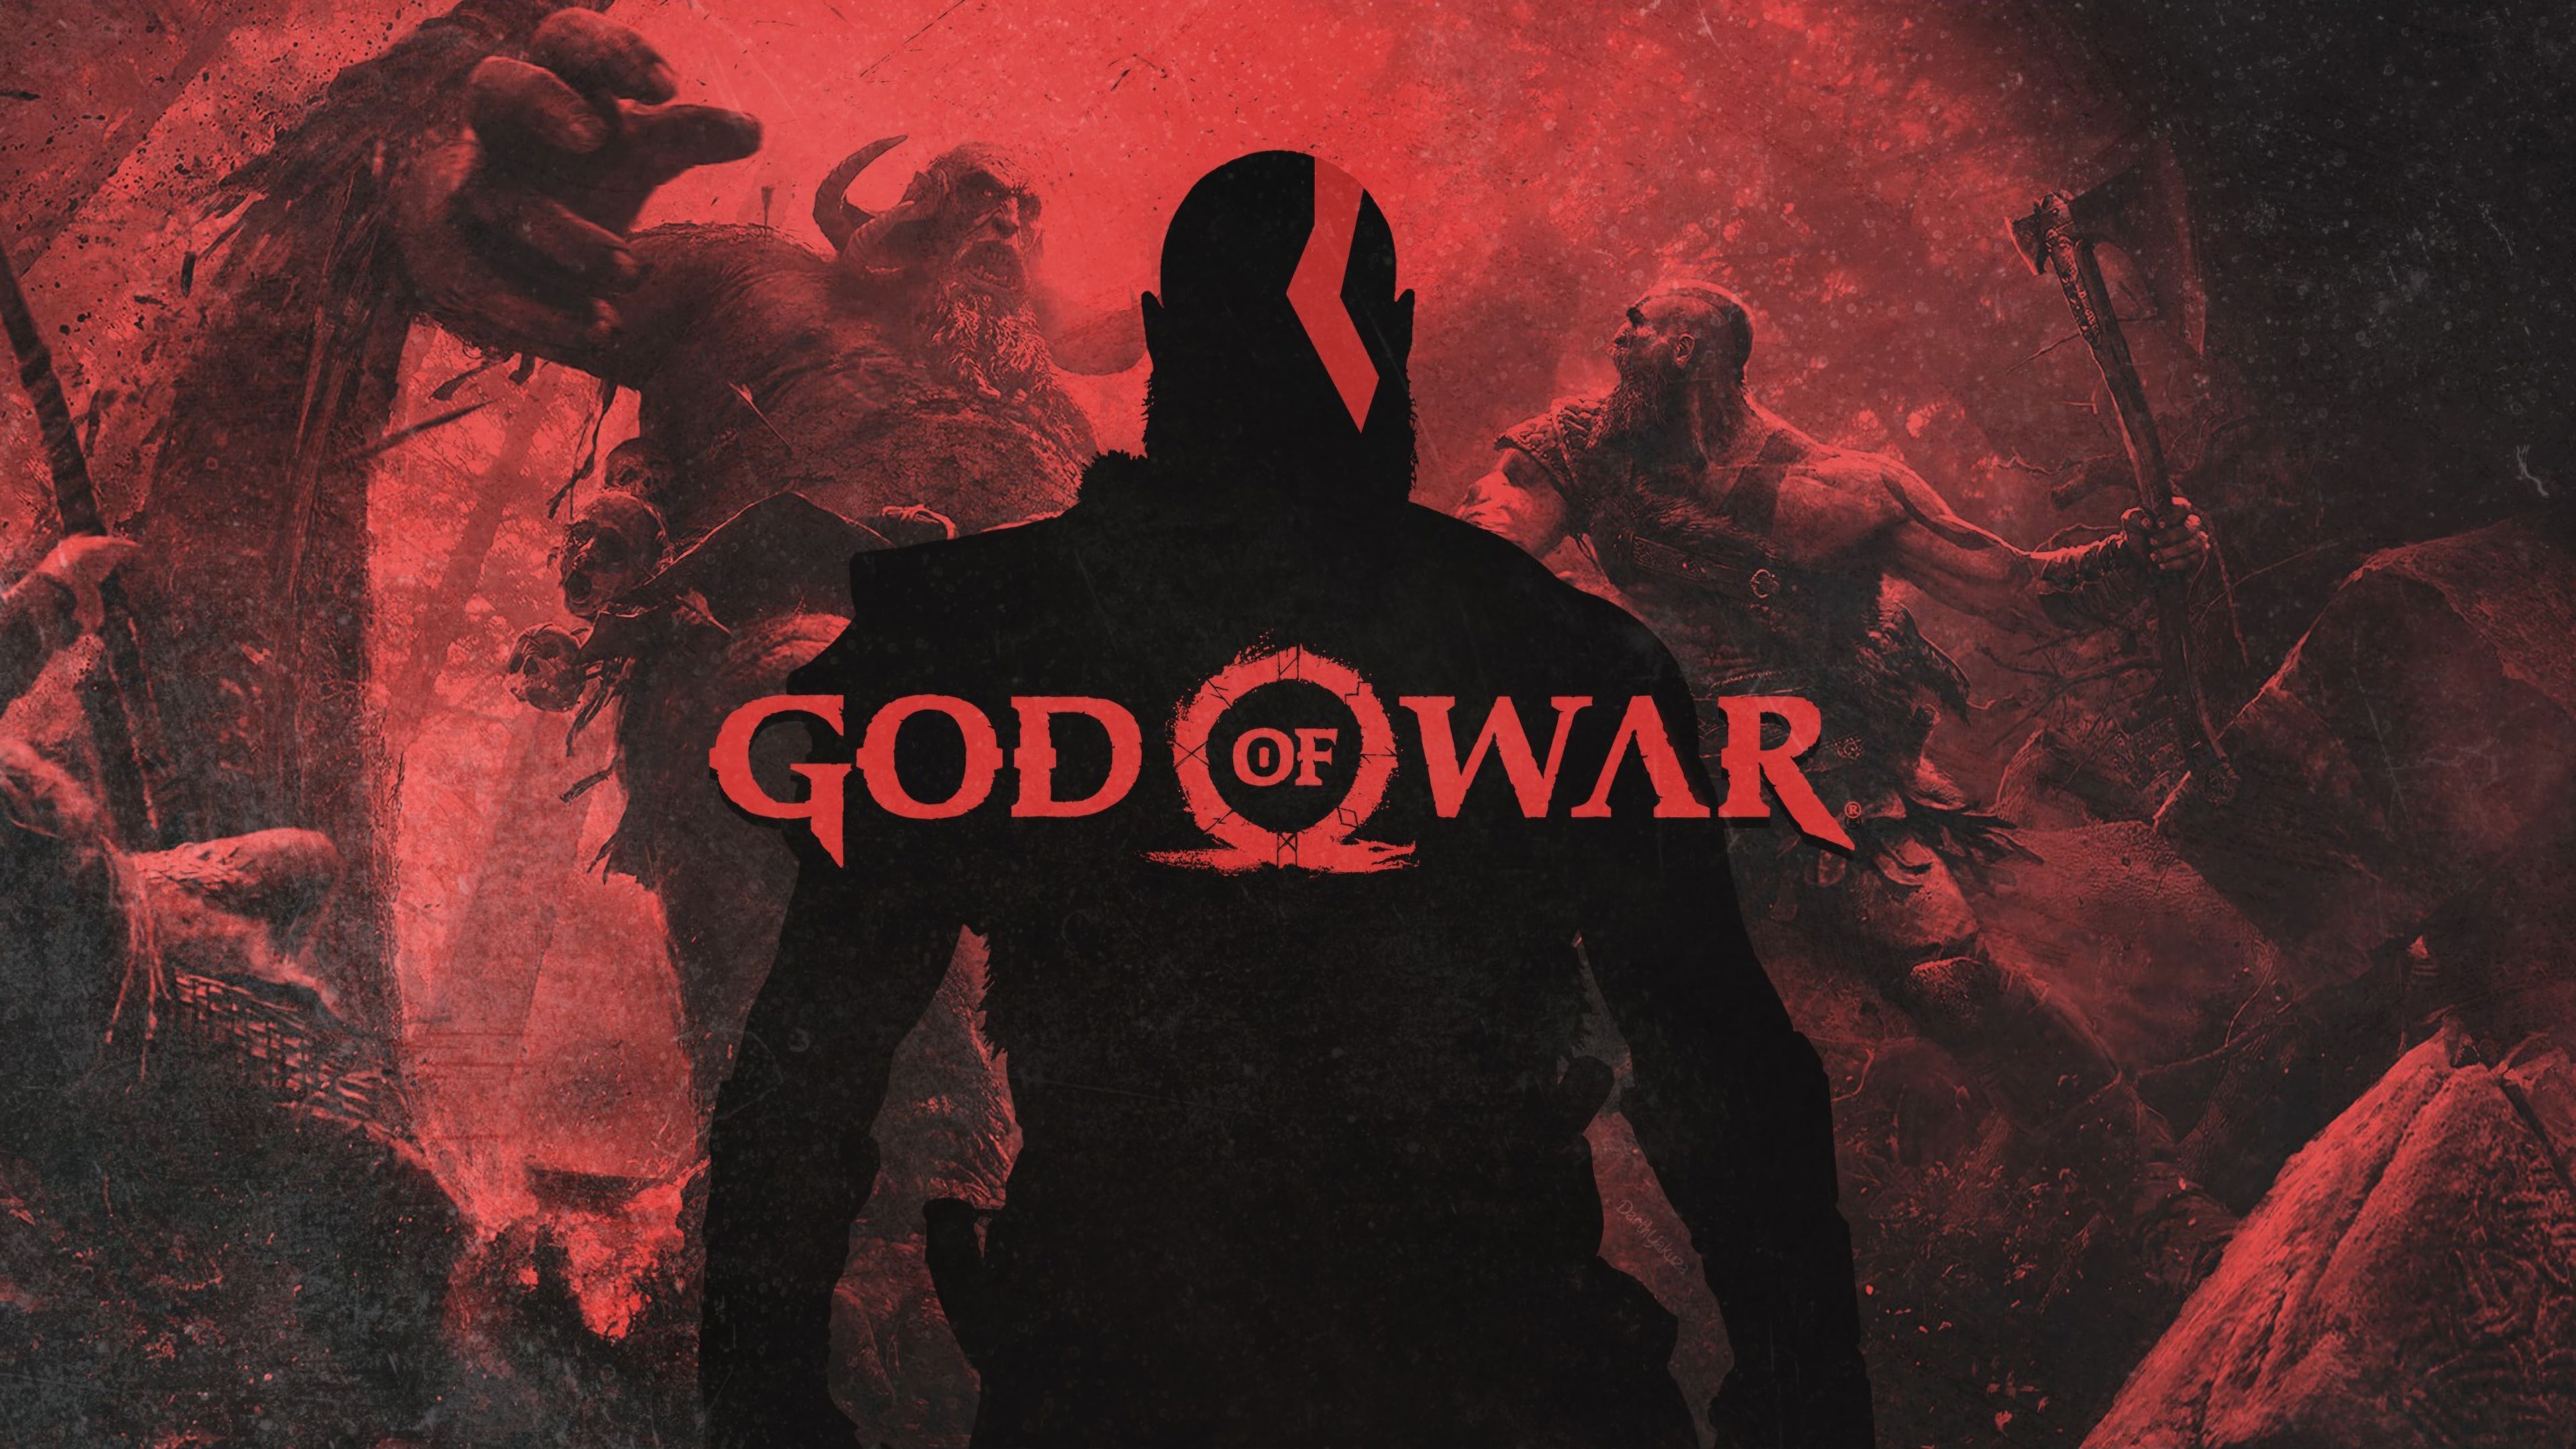 God Of War Kratos 4k Ps Games Wallpaper, Kratos Wallpaper, Hd Wallpaper, God Of War Wallpaper, God Of War 4 Wallpaper, Ga. God Of War, Kratos God Of War, War